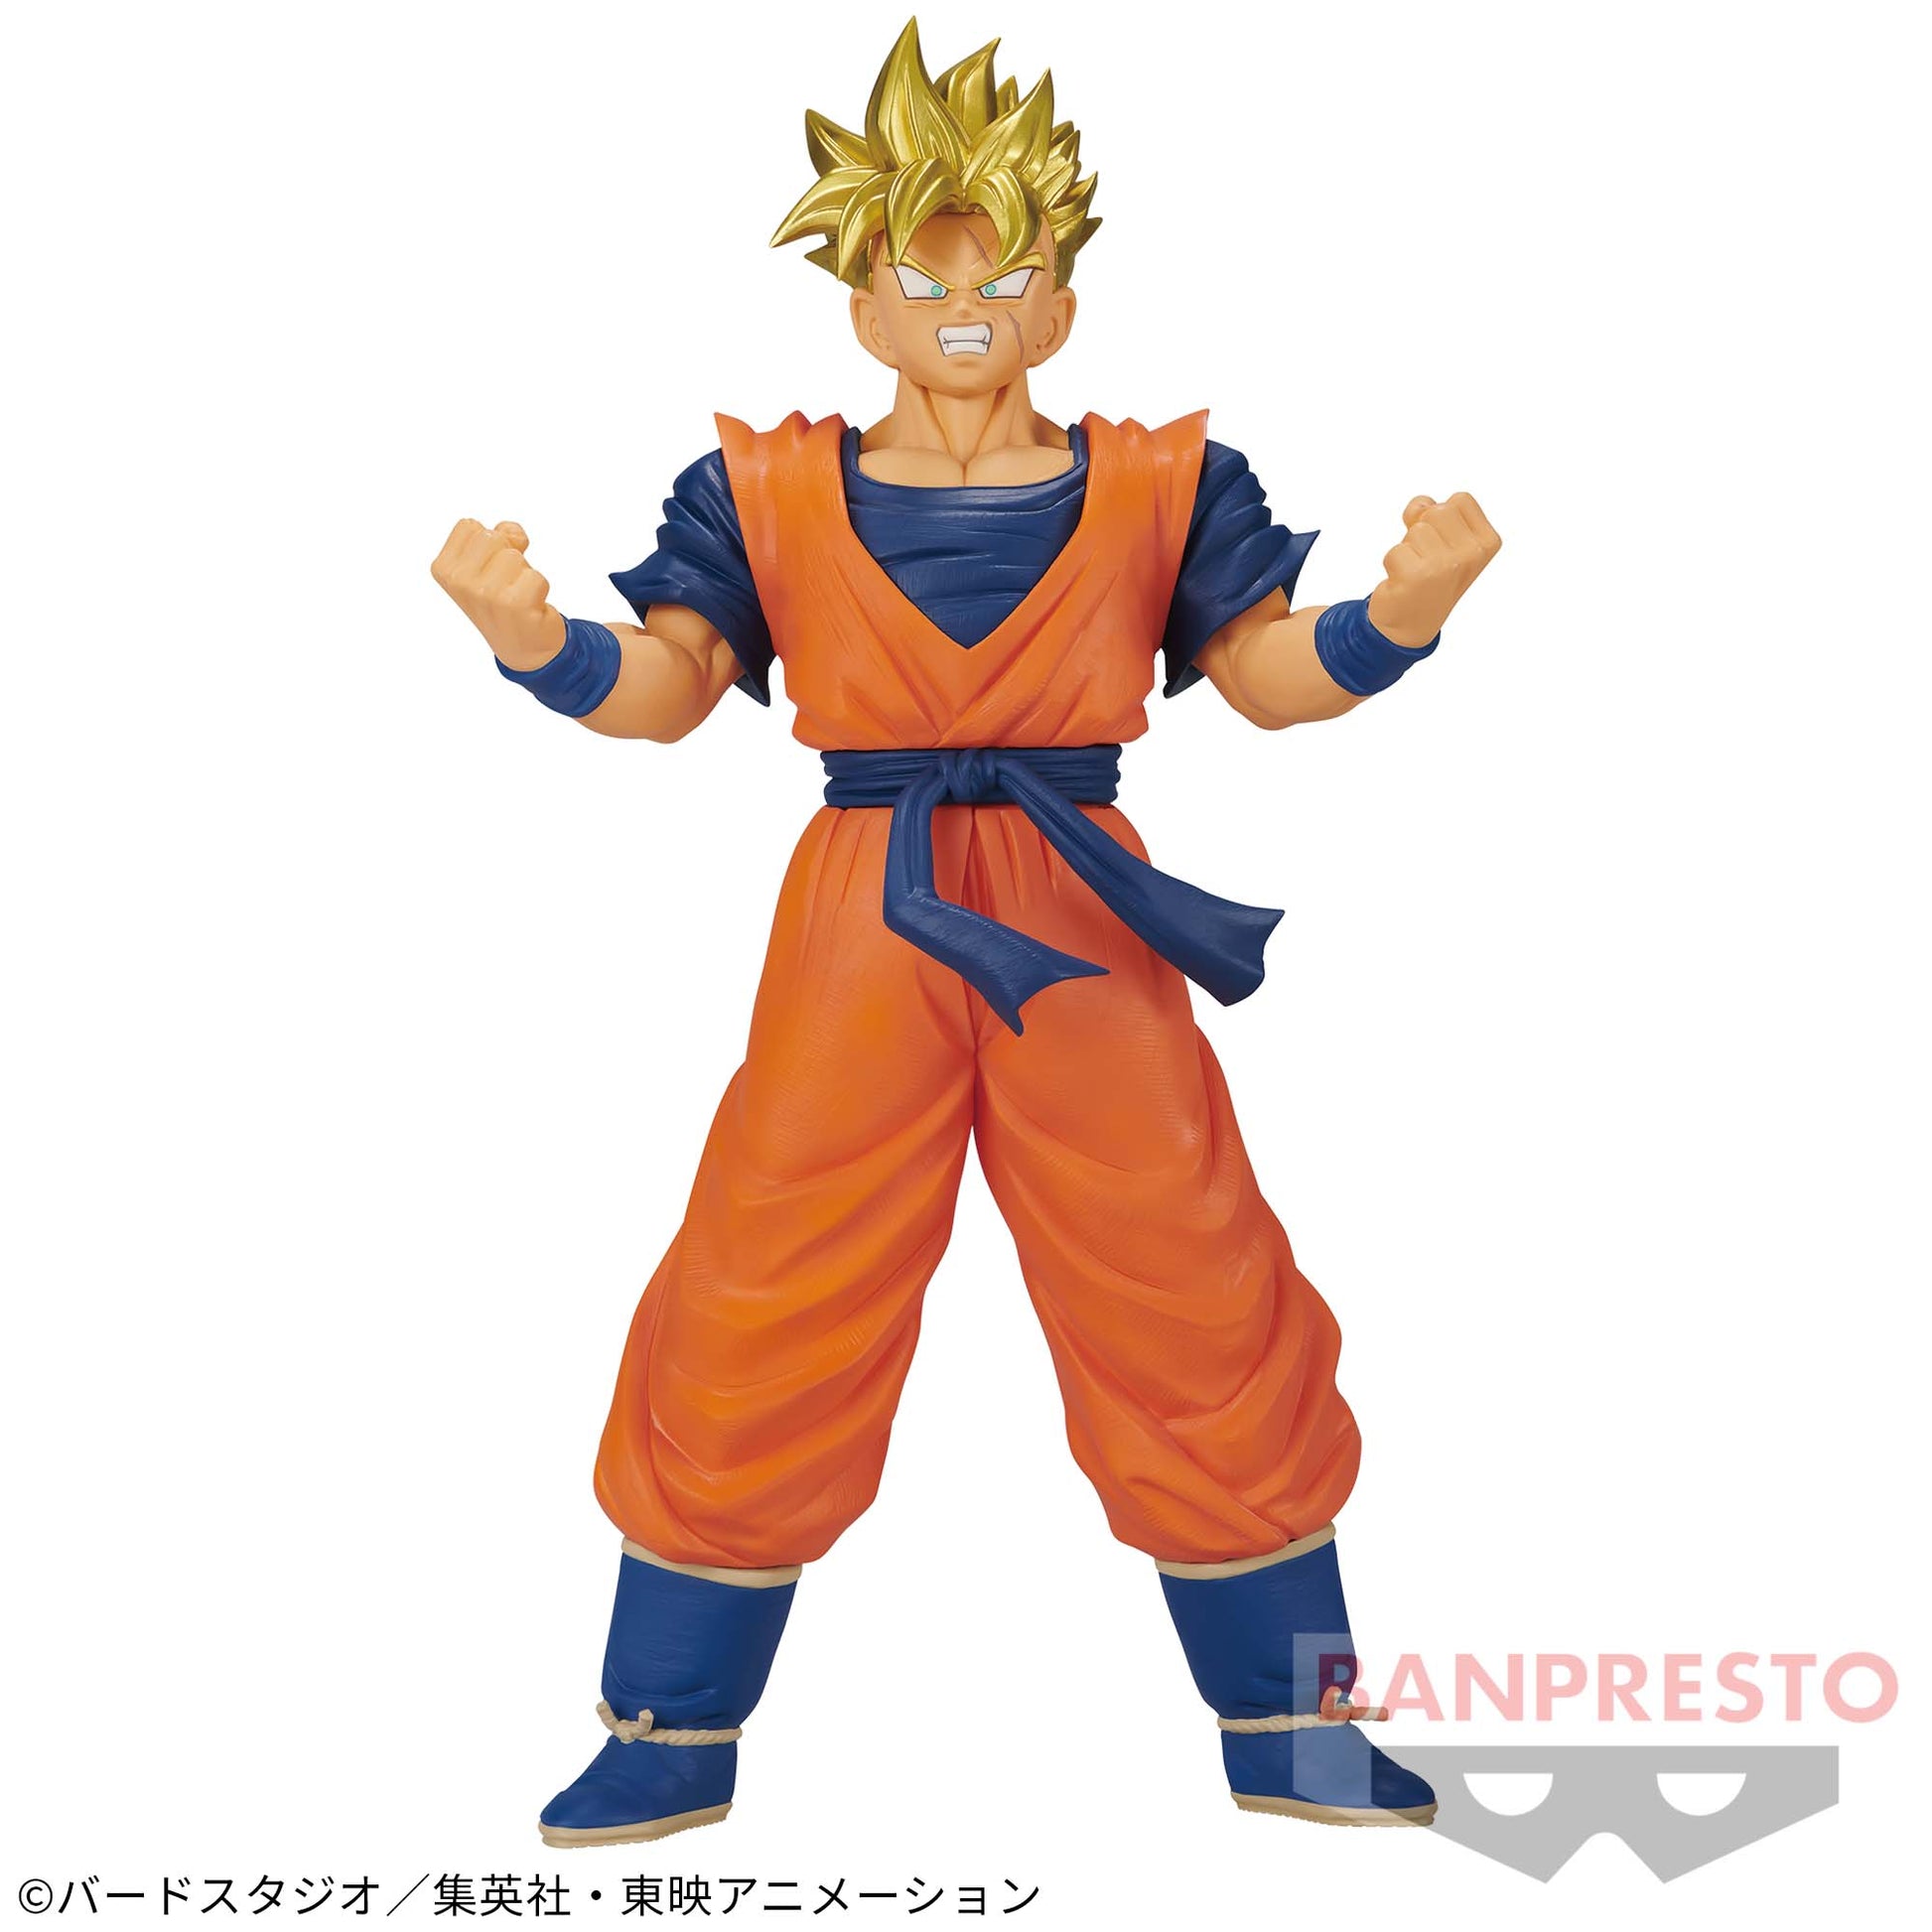 Dragon Ball Z Banpresto Blood of Saiyans Special XV Future Gohan SSJ Figure Buy